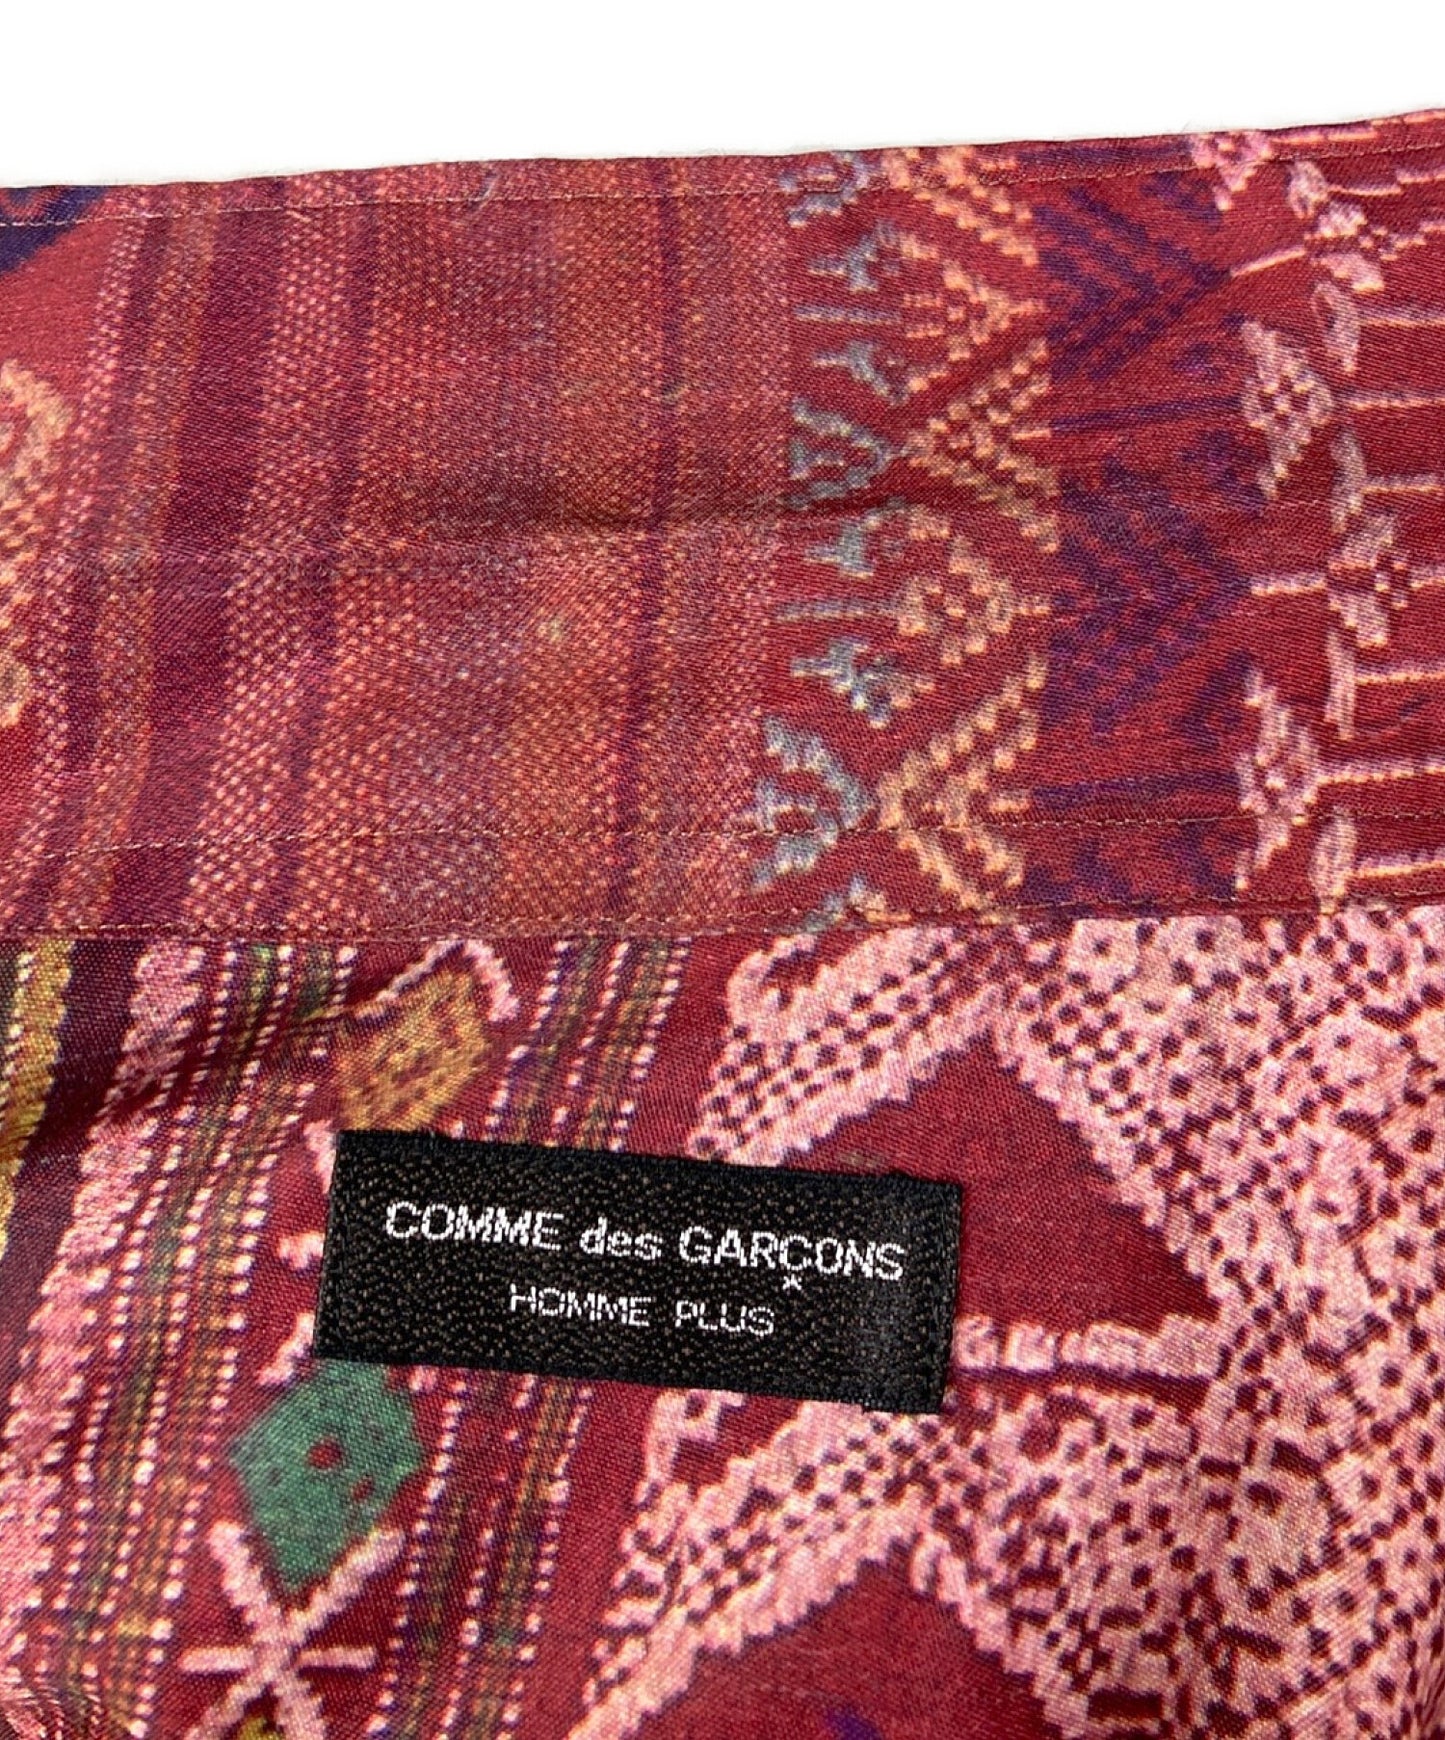 Comme des Garcons Homme Plus 92SS种族转移印刷开放项圈Poly Shirt PB-10230